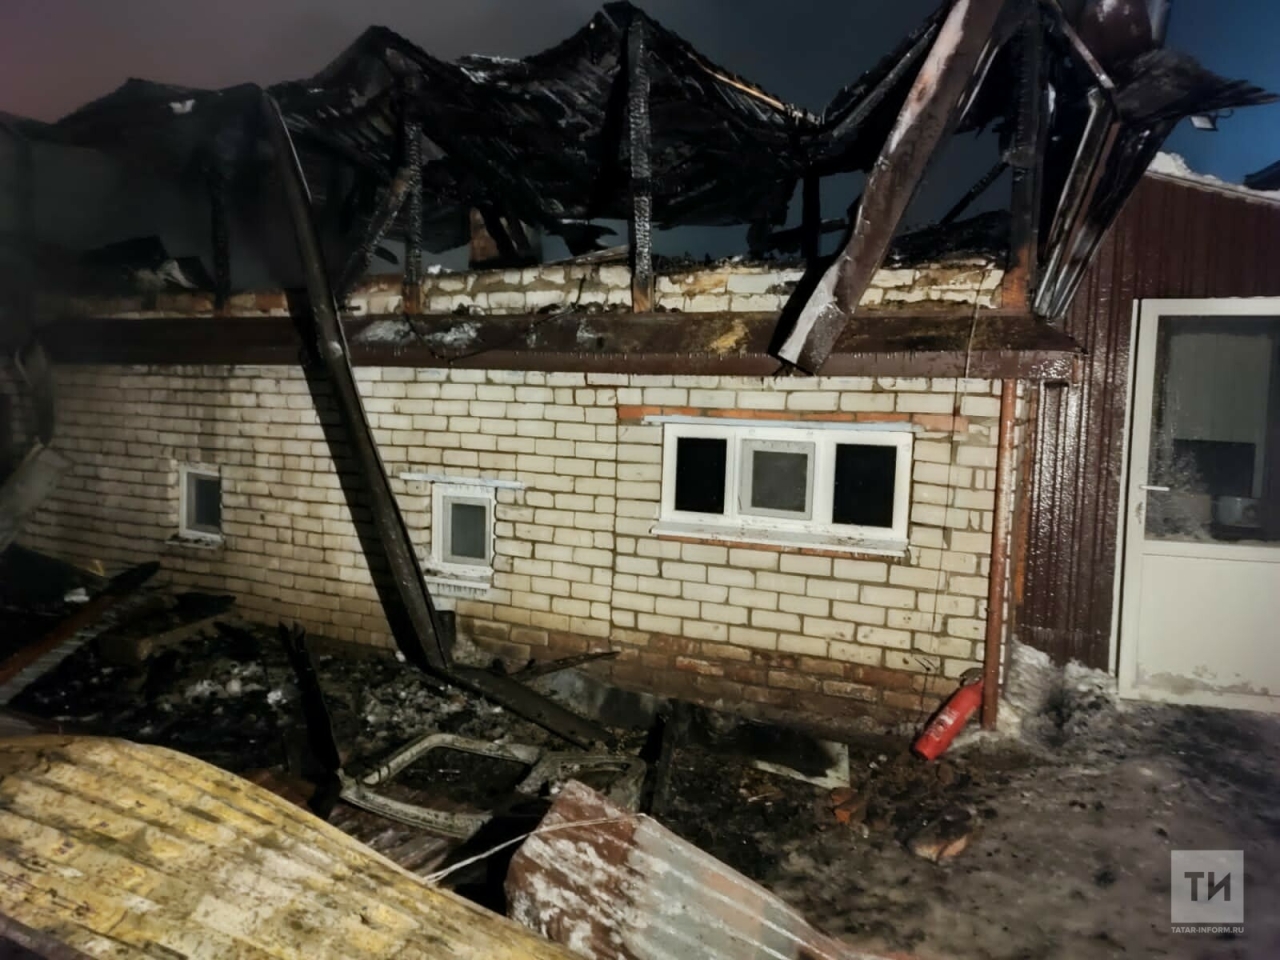 Мужчина получил серьезные ожоги на пожаре в поселке под Казанью